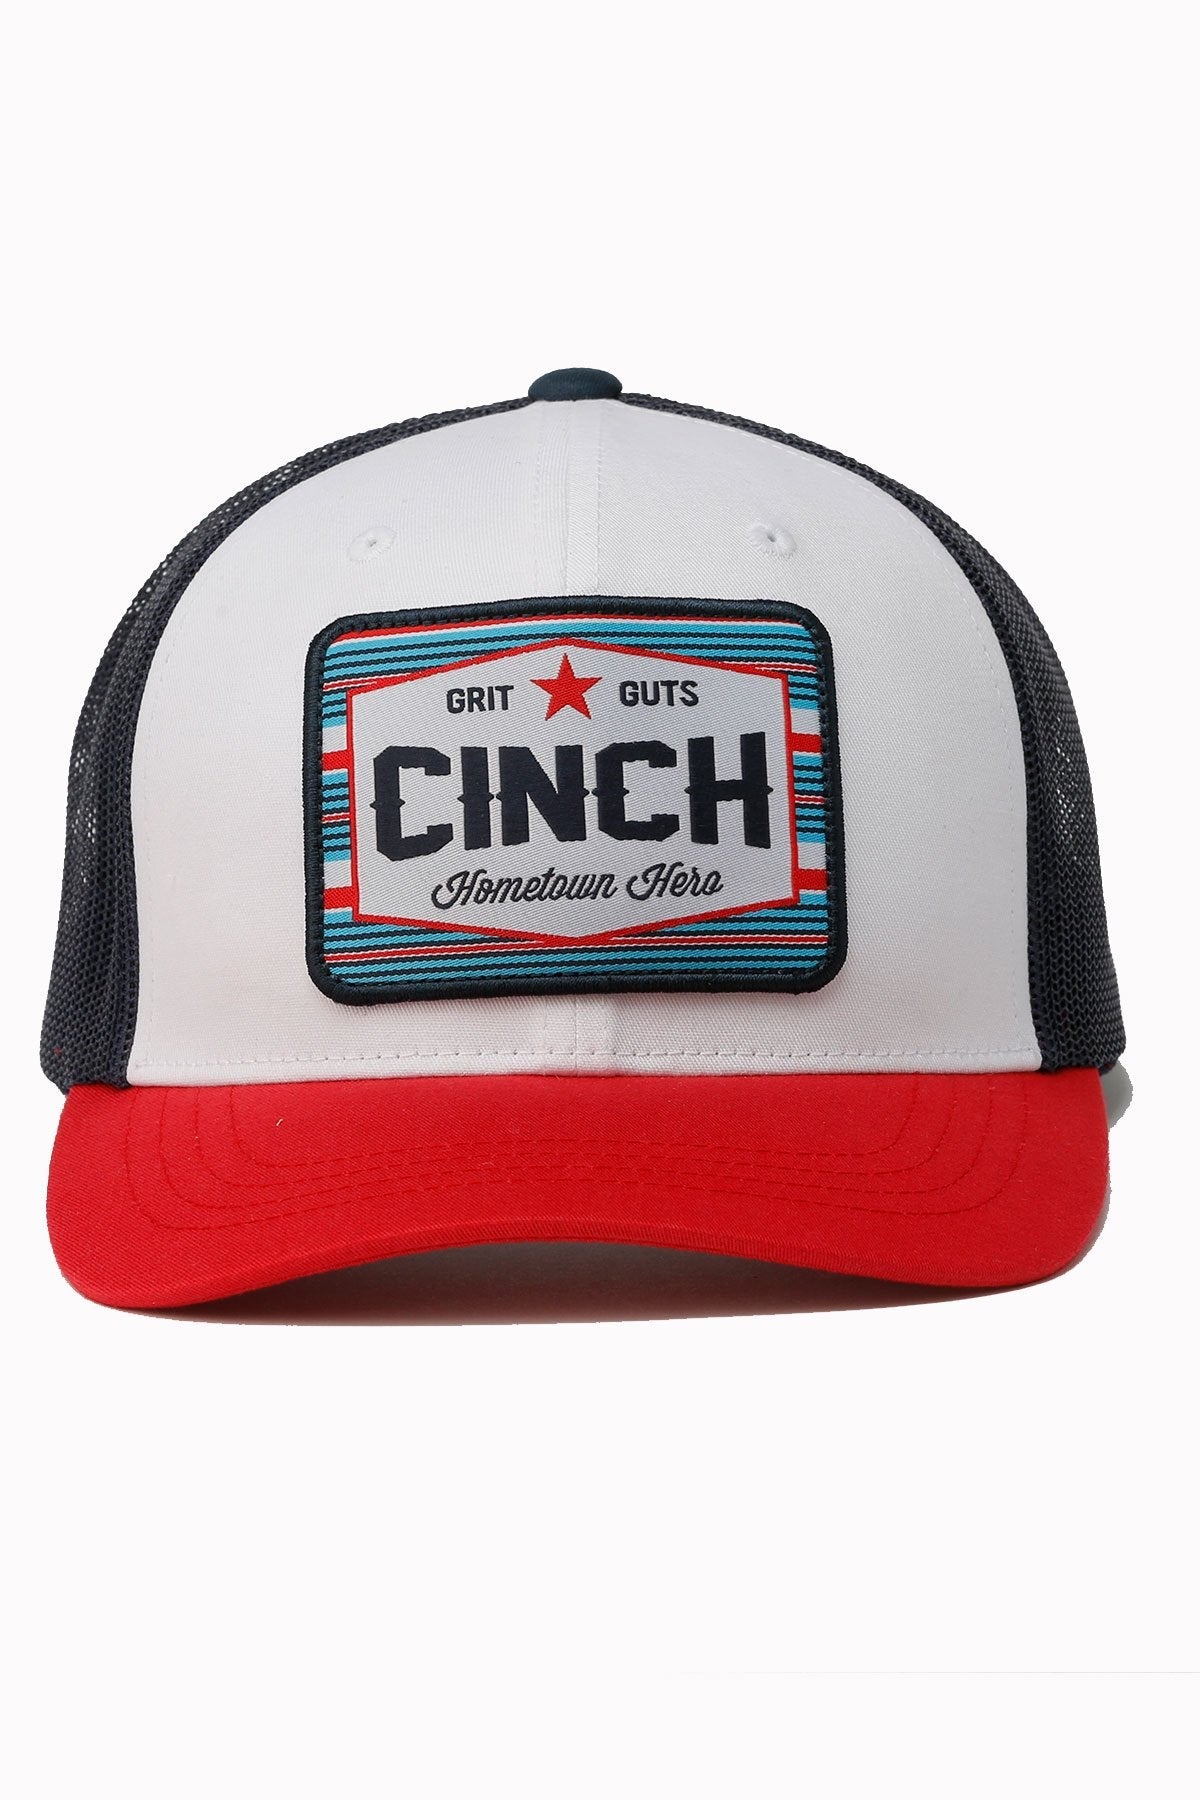 Cinch Hometown Hero Trucker Cap